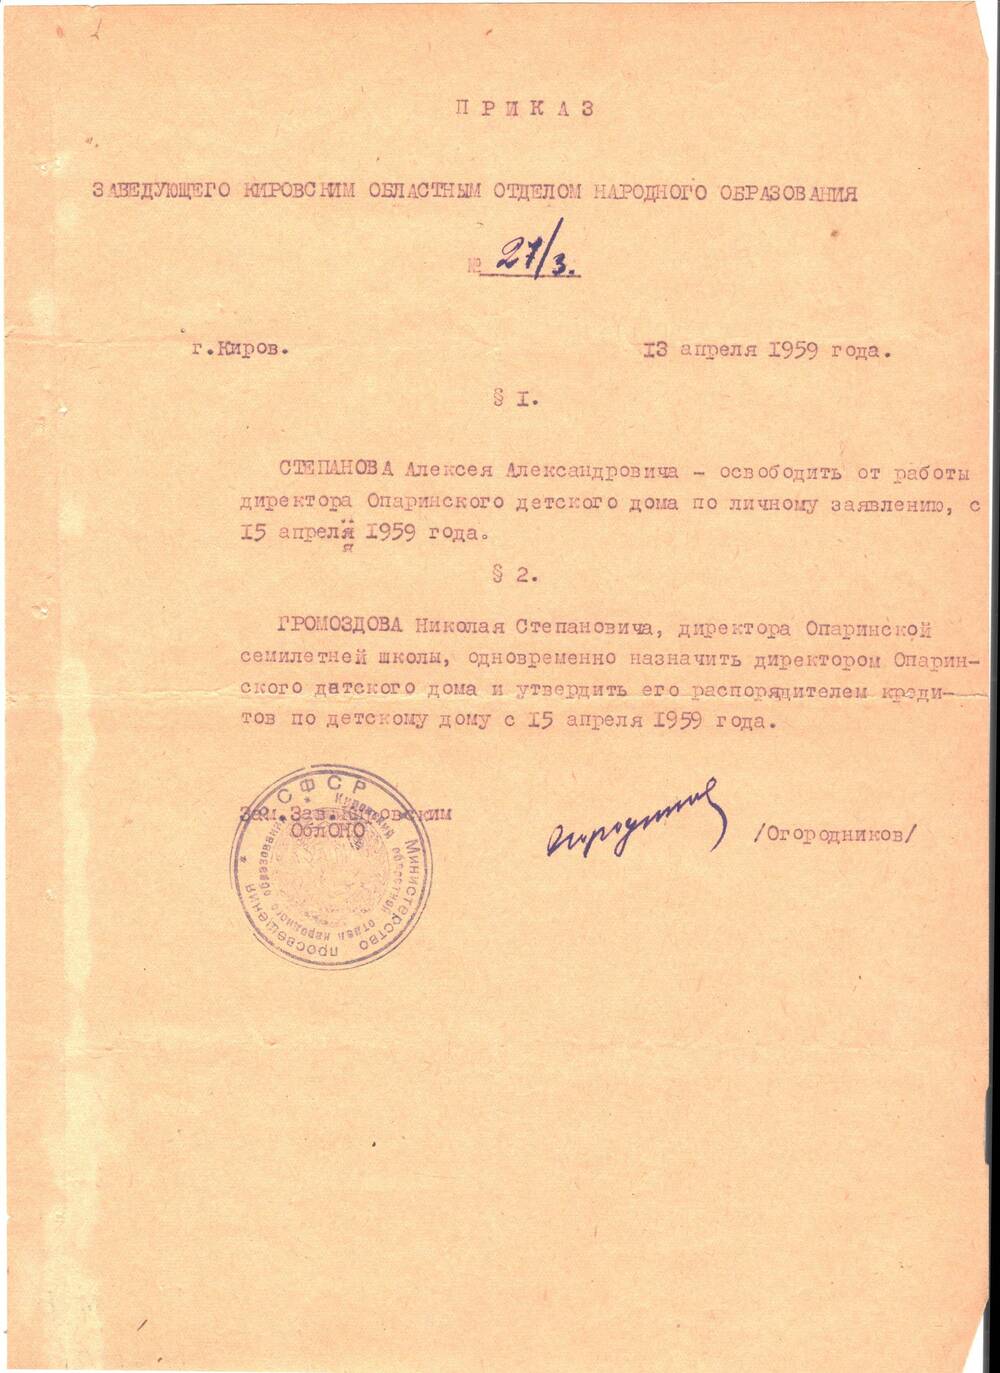 Приказ №27/3 Степанова Алексея Александровича освободить от должности директора Опаринской детского дома по личному заявлению с 15 апреля 1959 года.